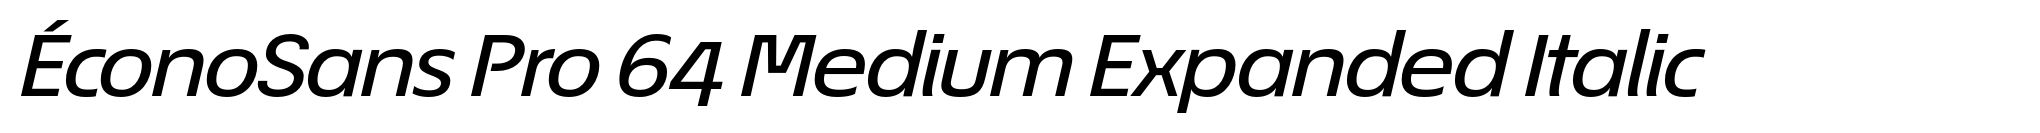 ÉconoSans Pro 64 Medium Expanded Italic image